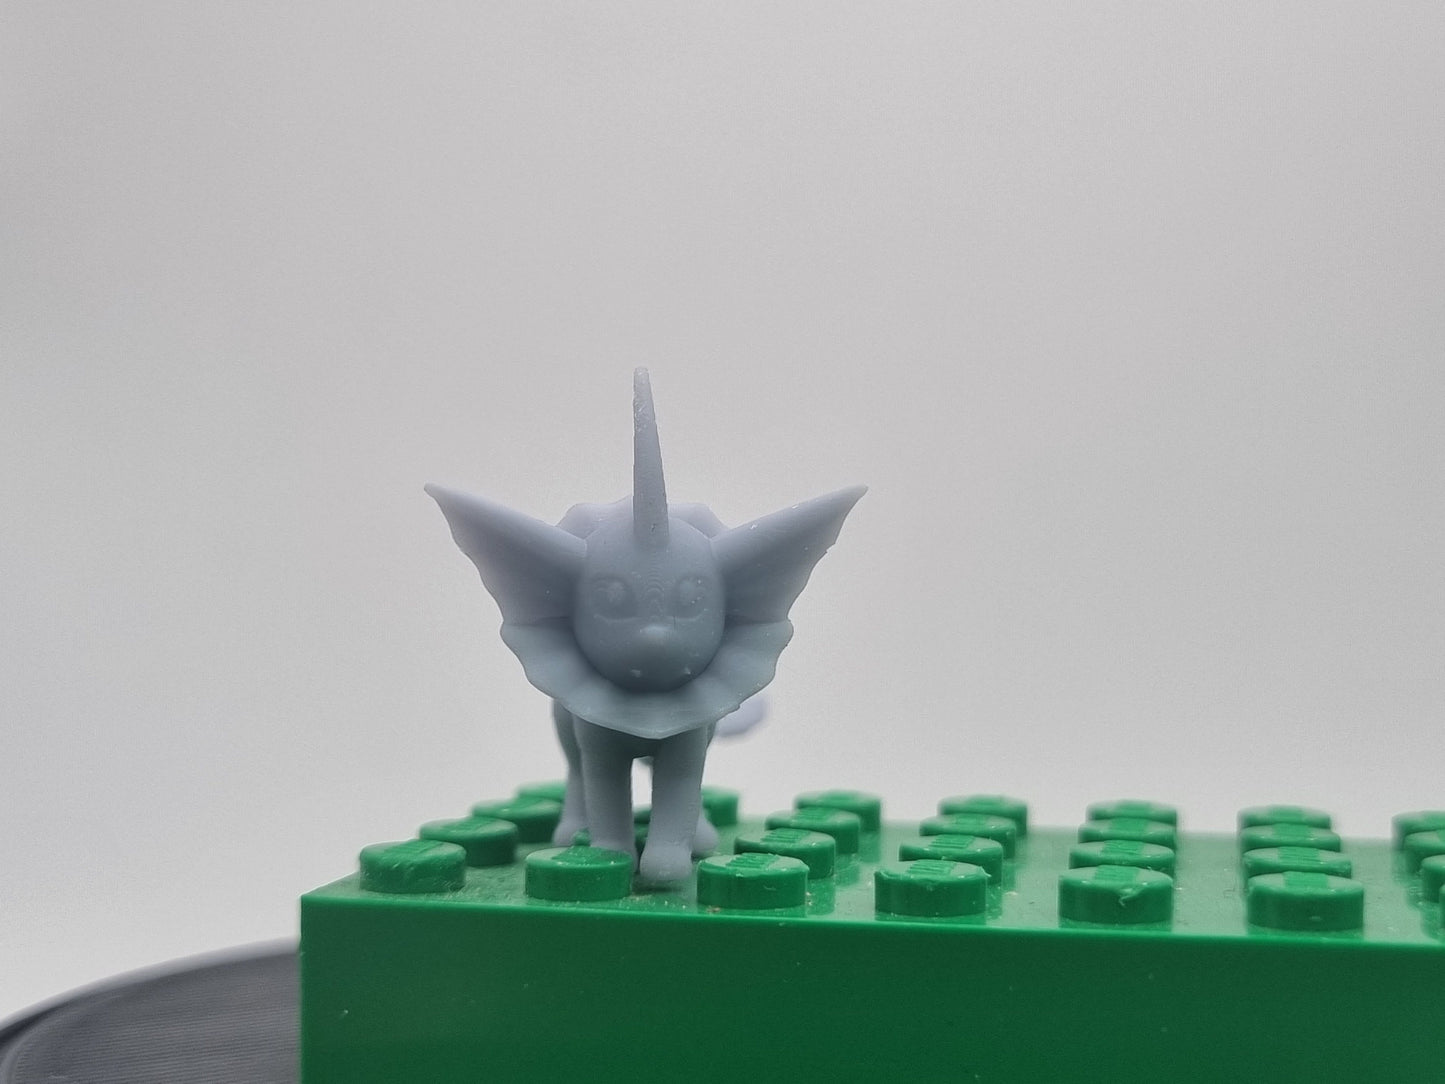 Building toy custom 3D printed waterdog!